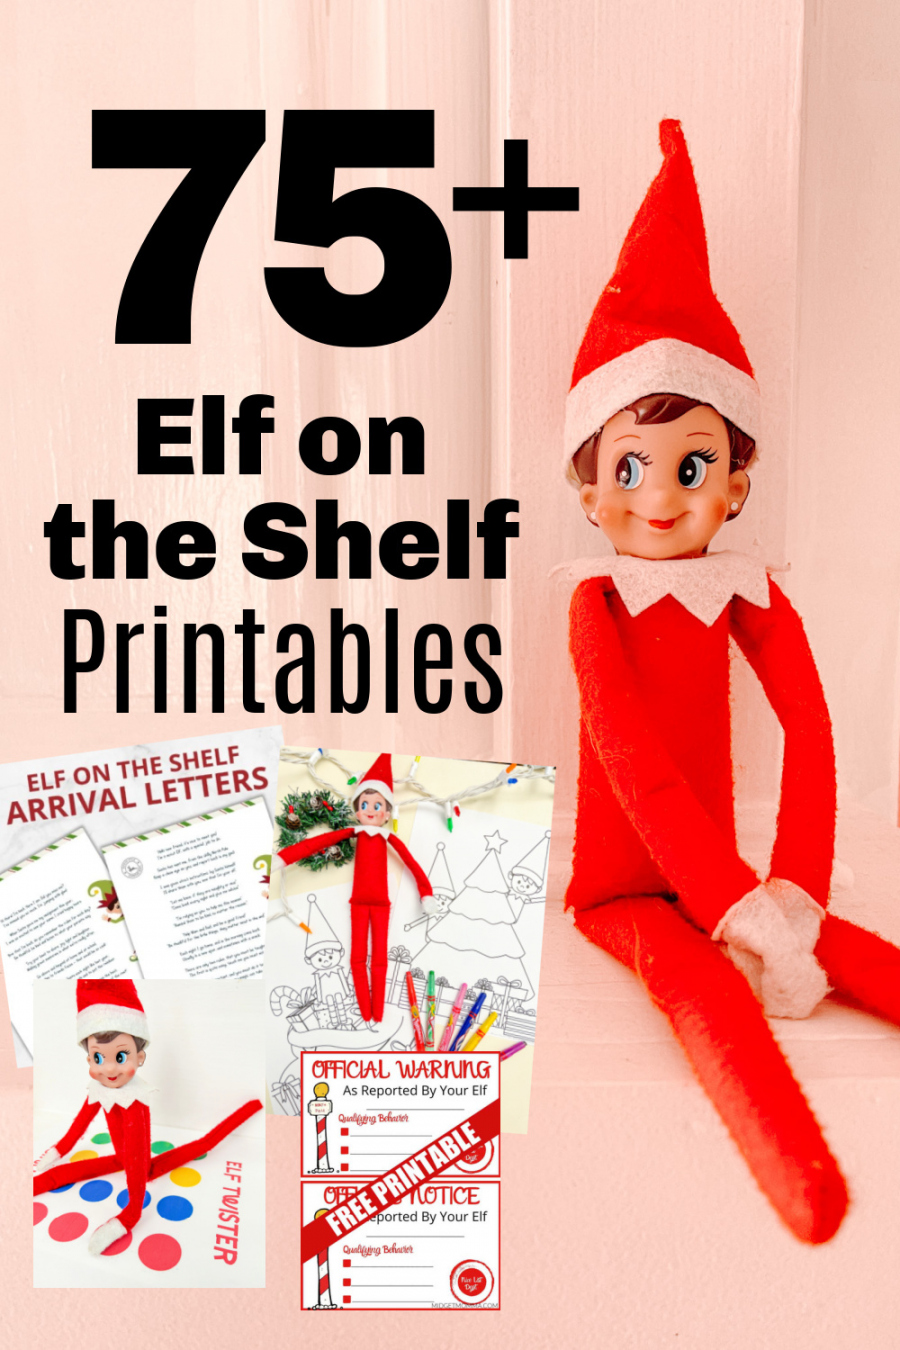 Free Printable Elf On The Shelf - Printable - Ultimate List of FREE Elf on the Shelf Printables - Over